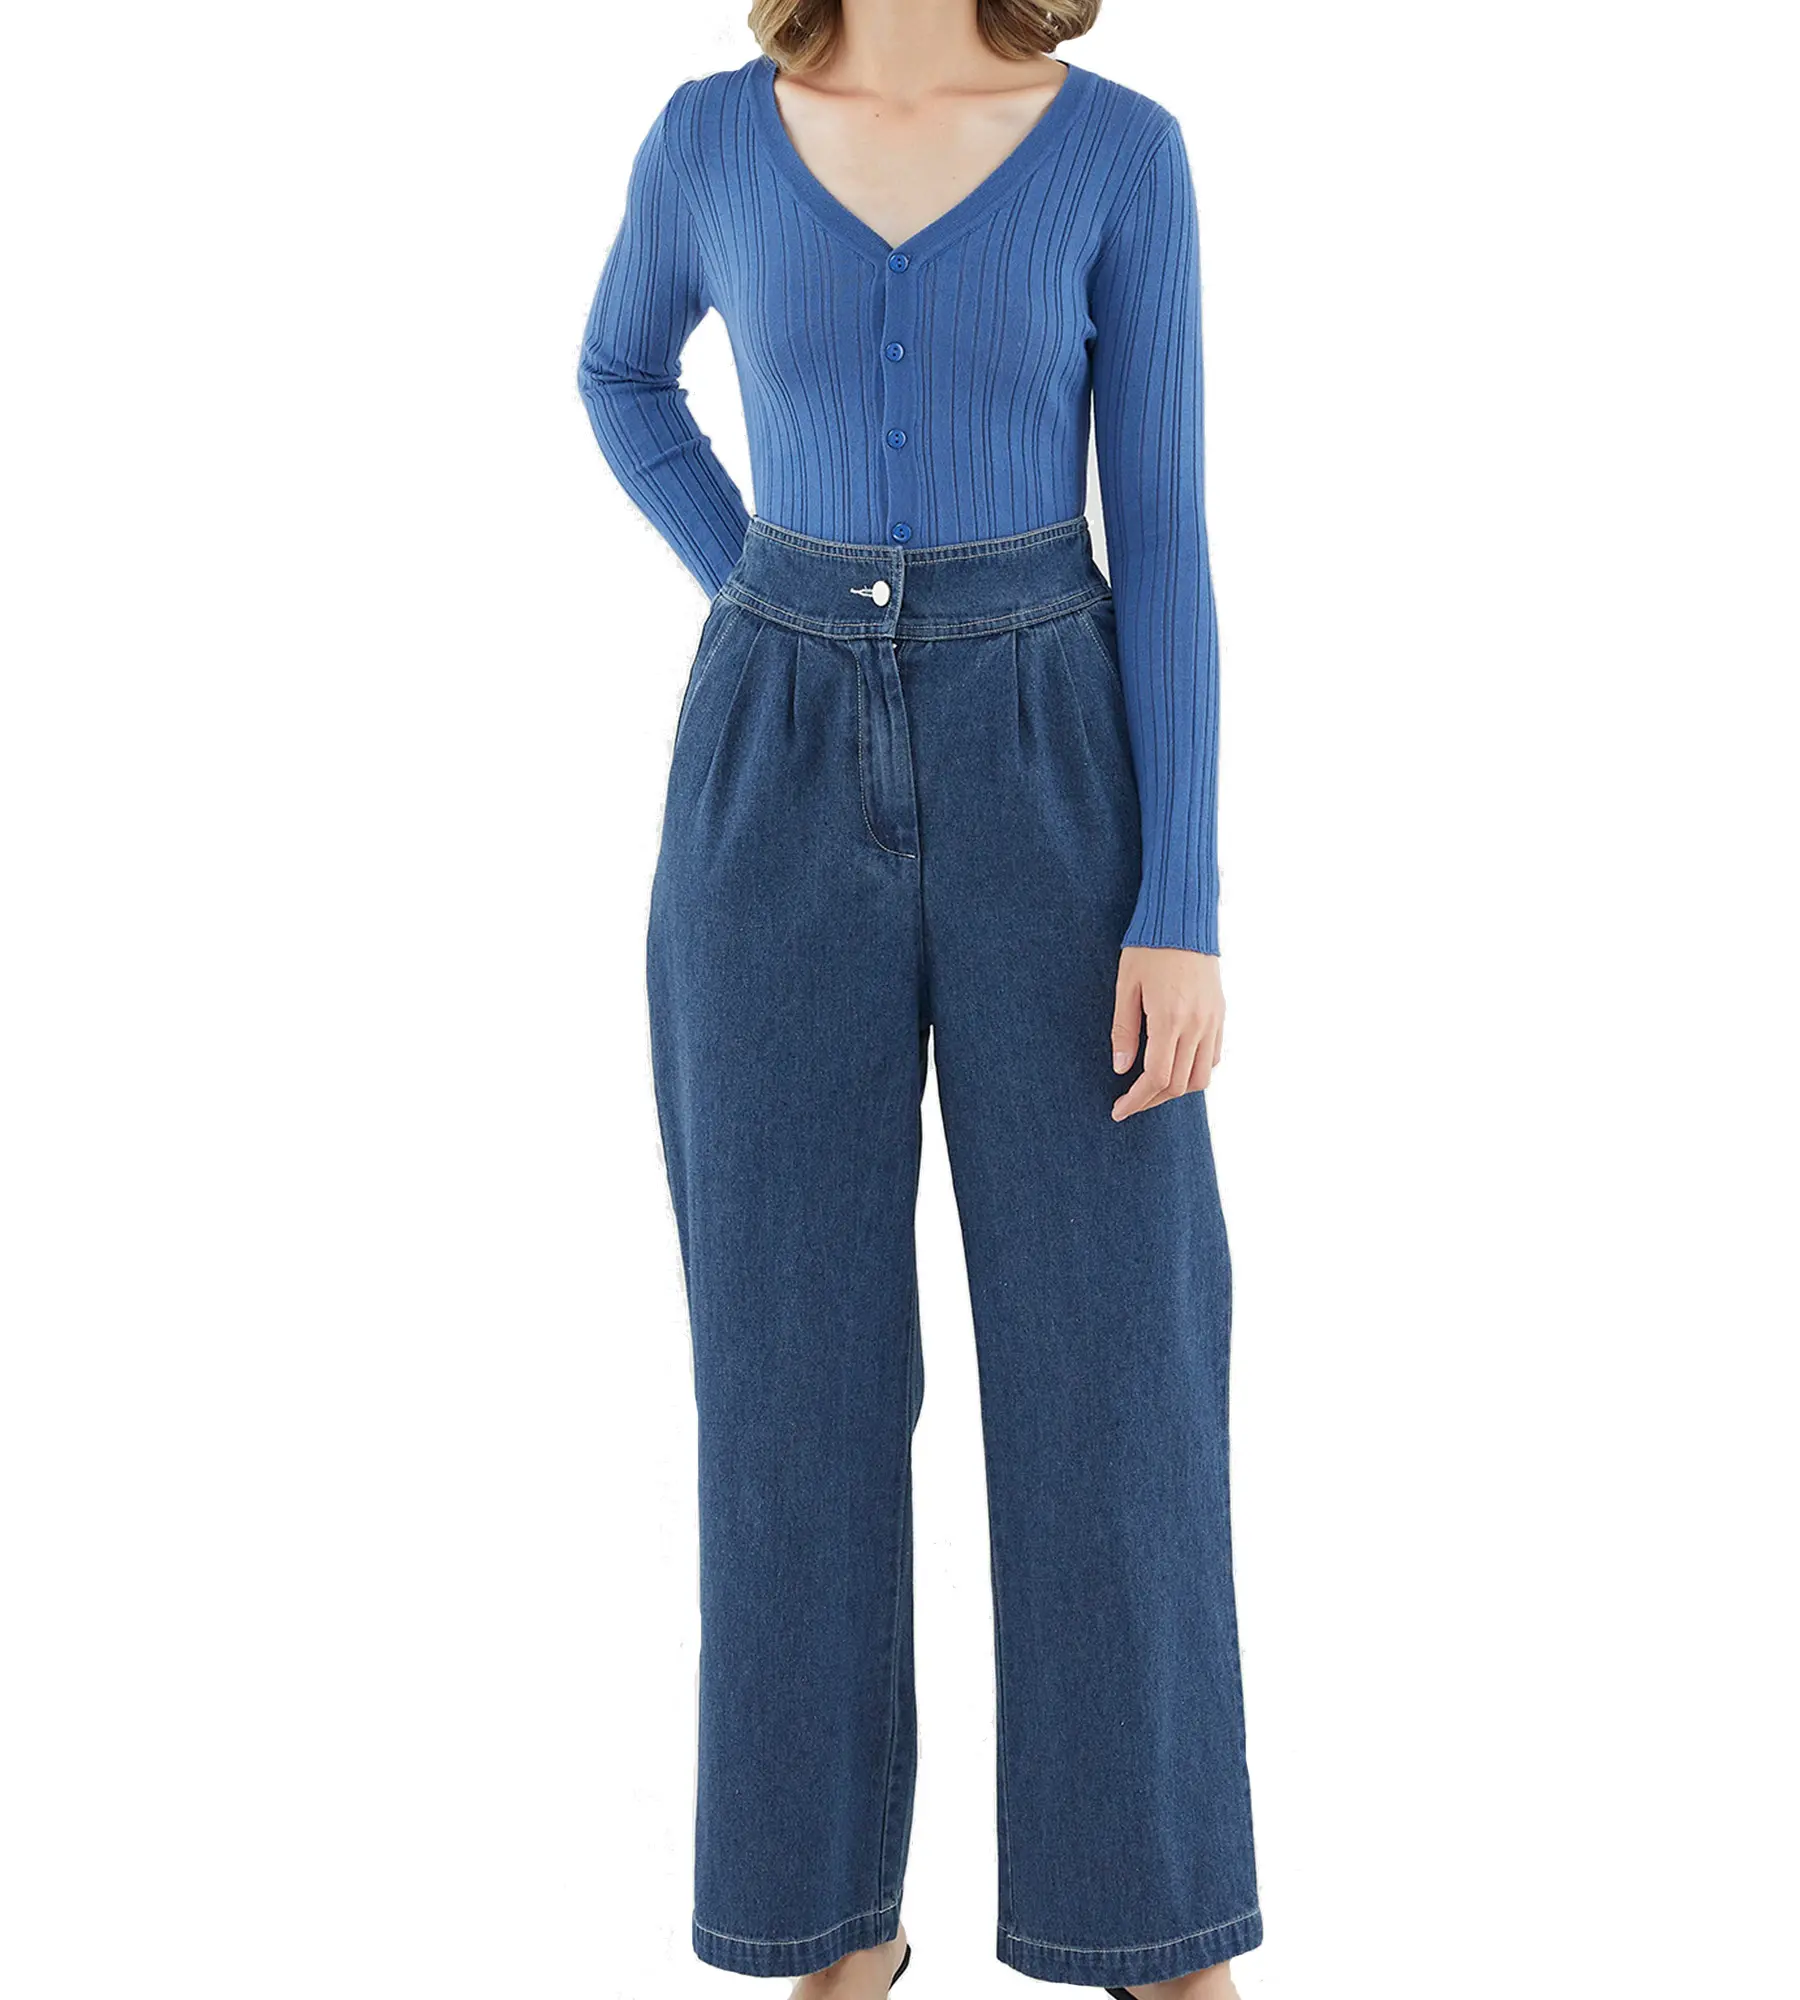 Pantalon en Denim bleu foncé décontracté, personnalisé, de qualité supérieure, ample, lavé, à jambes larges, pour femmes